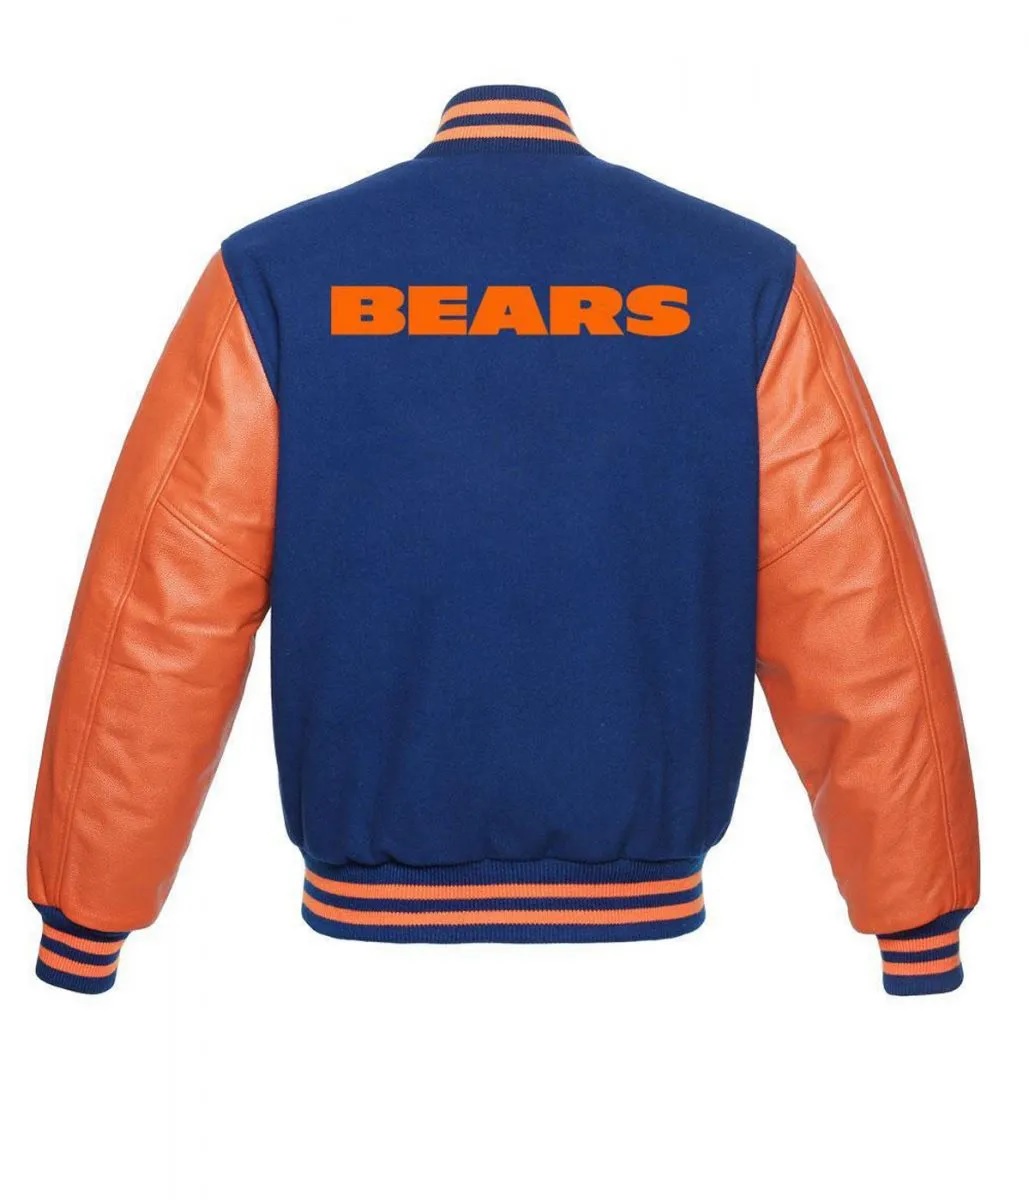 Chicago Bears NFL Varsity Orange and Blue Jacket